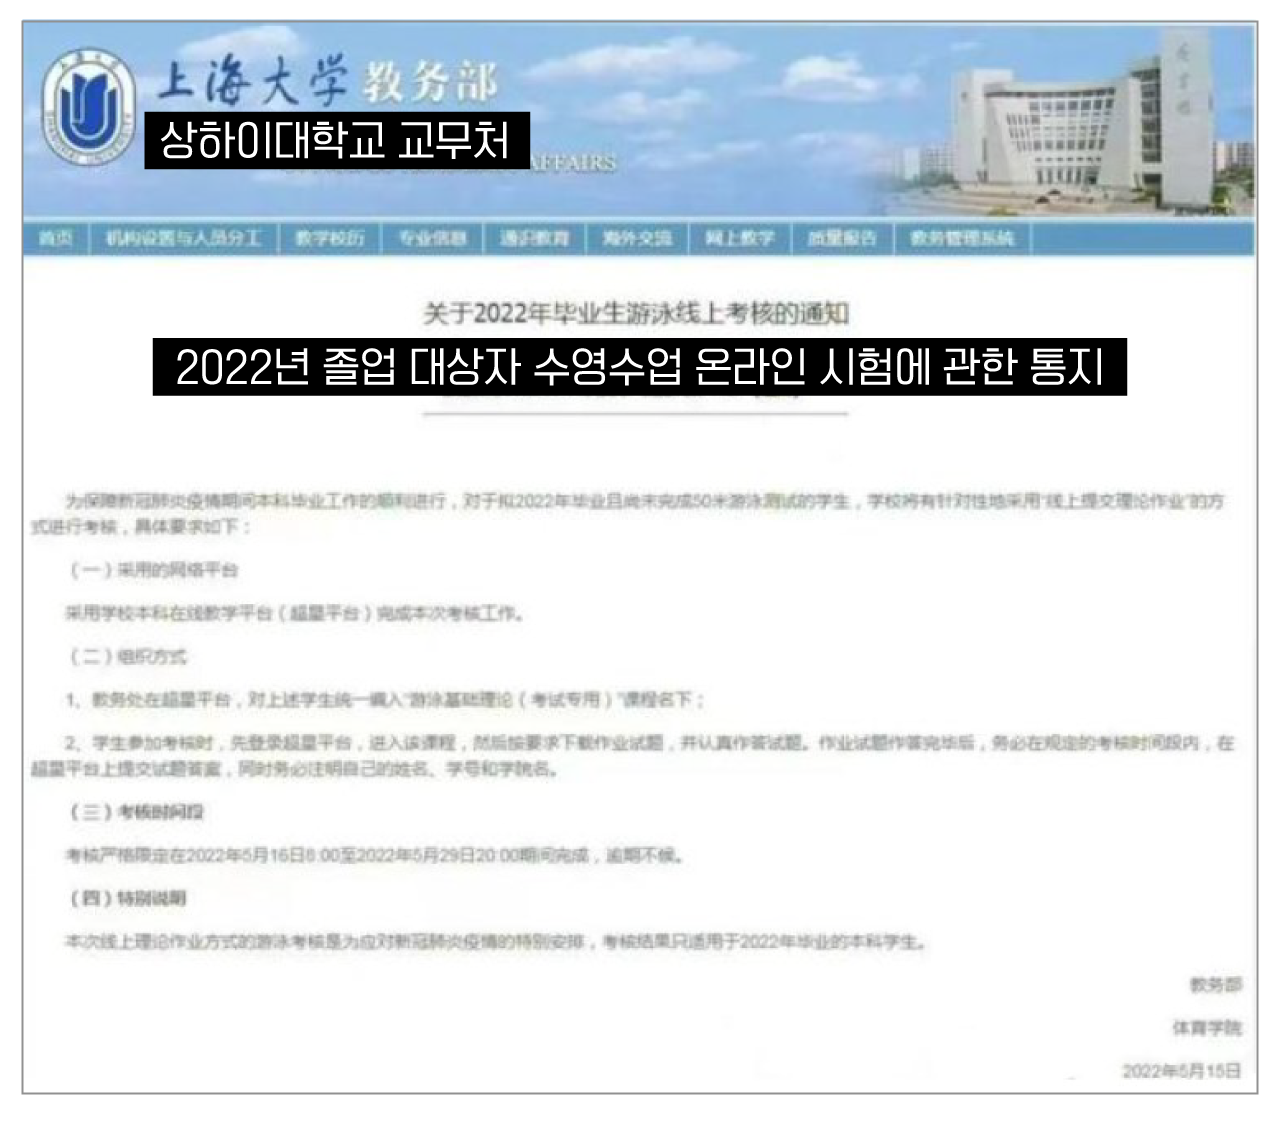 상하이대학교는 이 공지가 화제가 되자 논란을 의식한 듯  공지글을 홈페이지에서 삭제했다. (출처:  하이시아오두쉬바오)